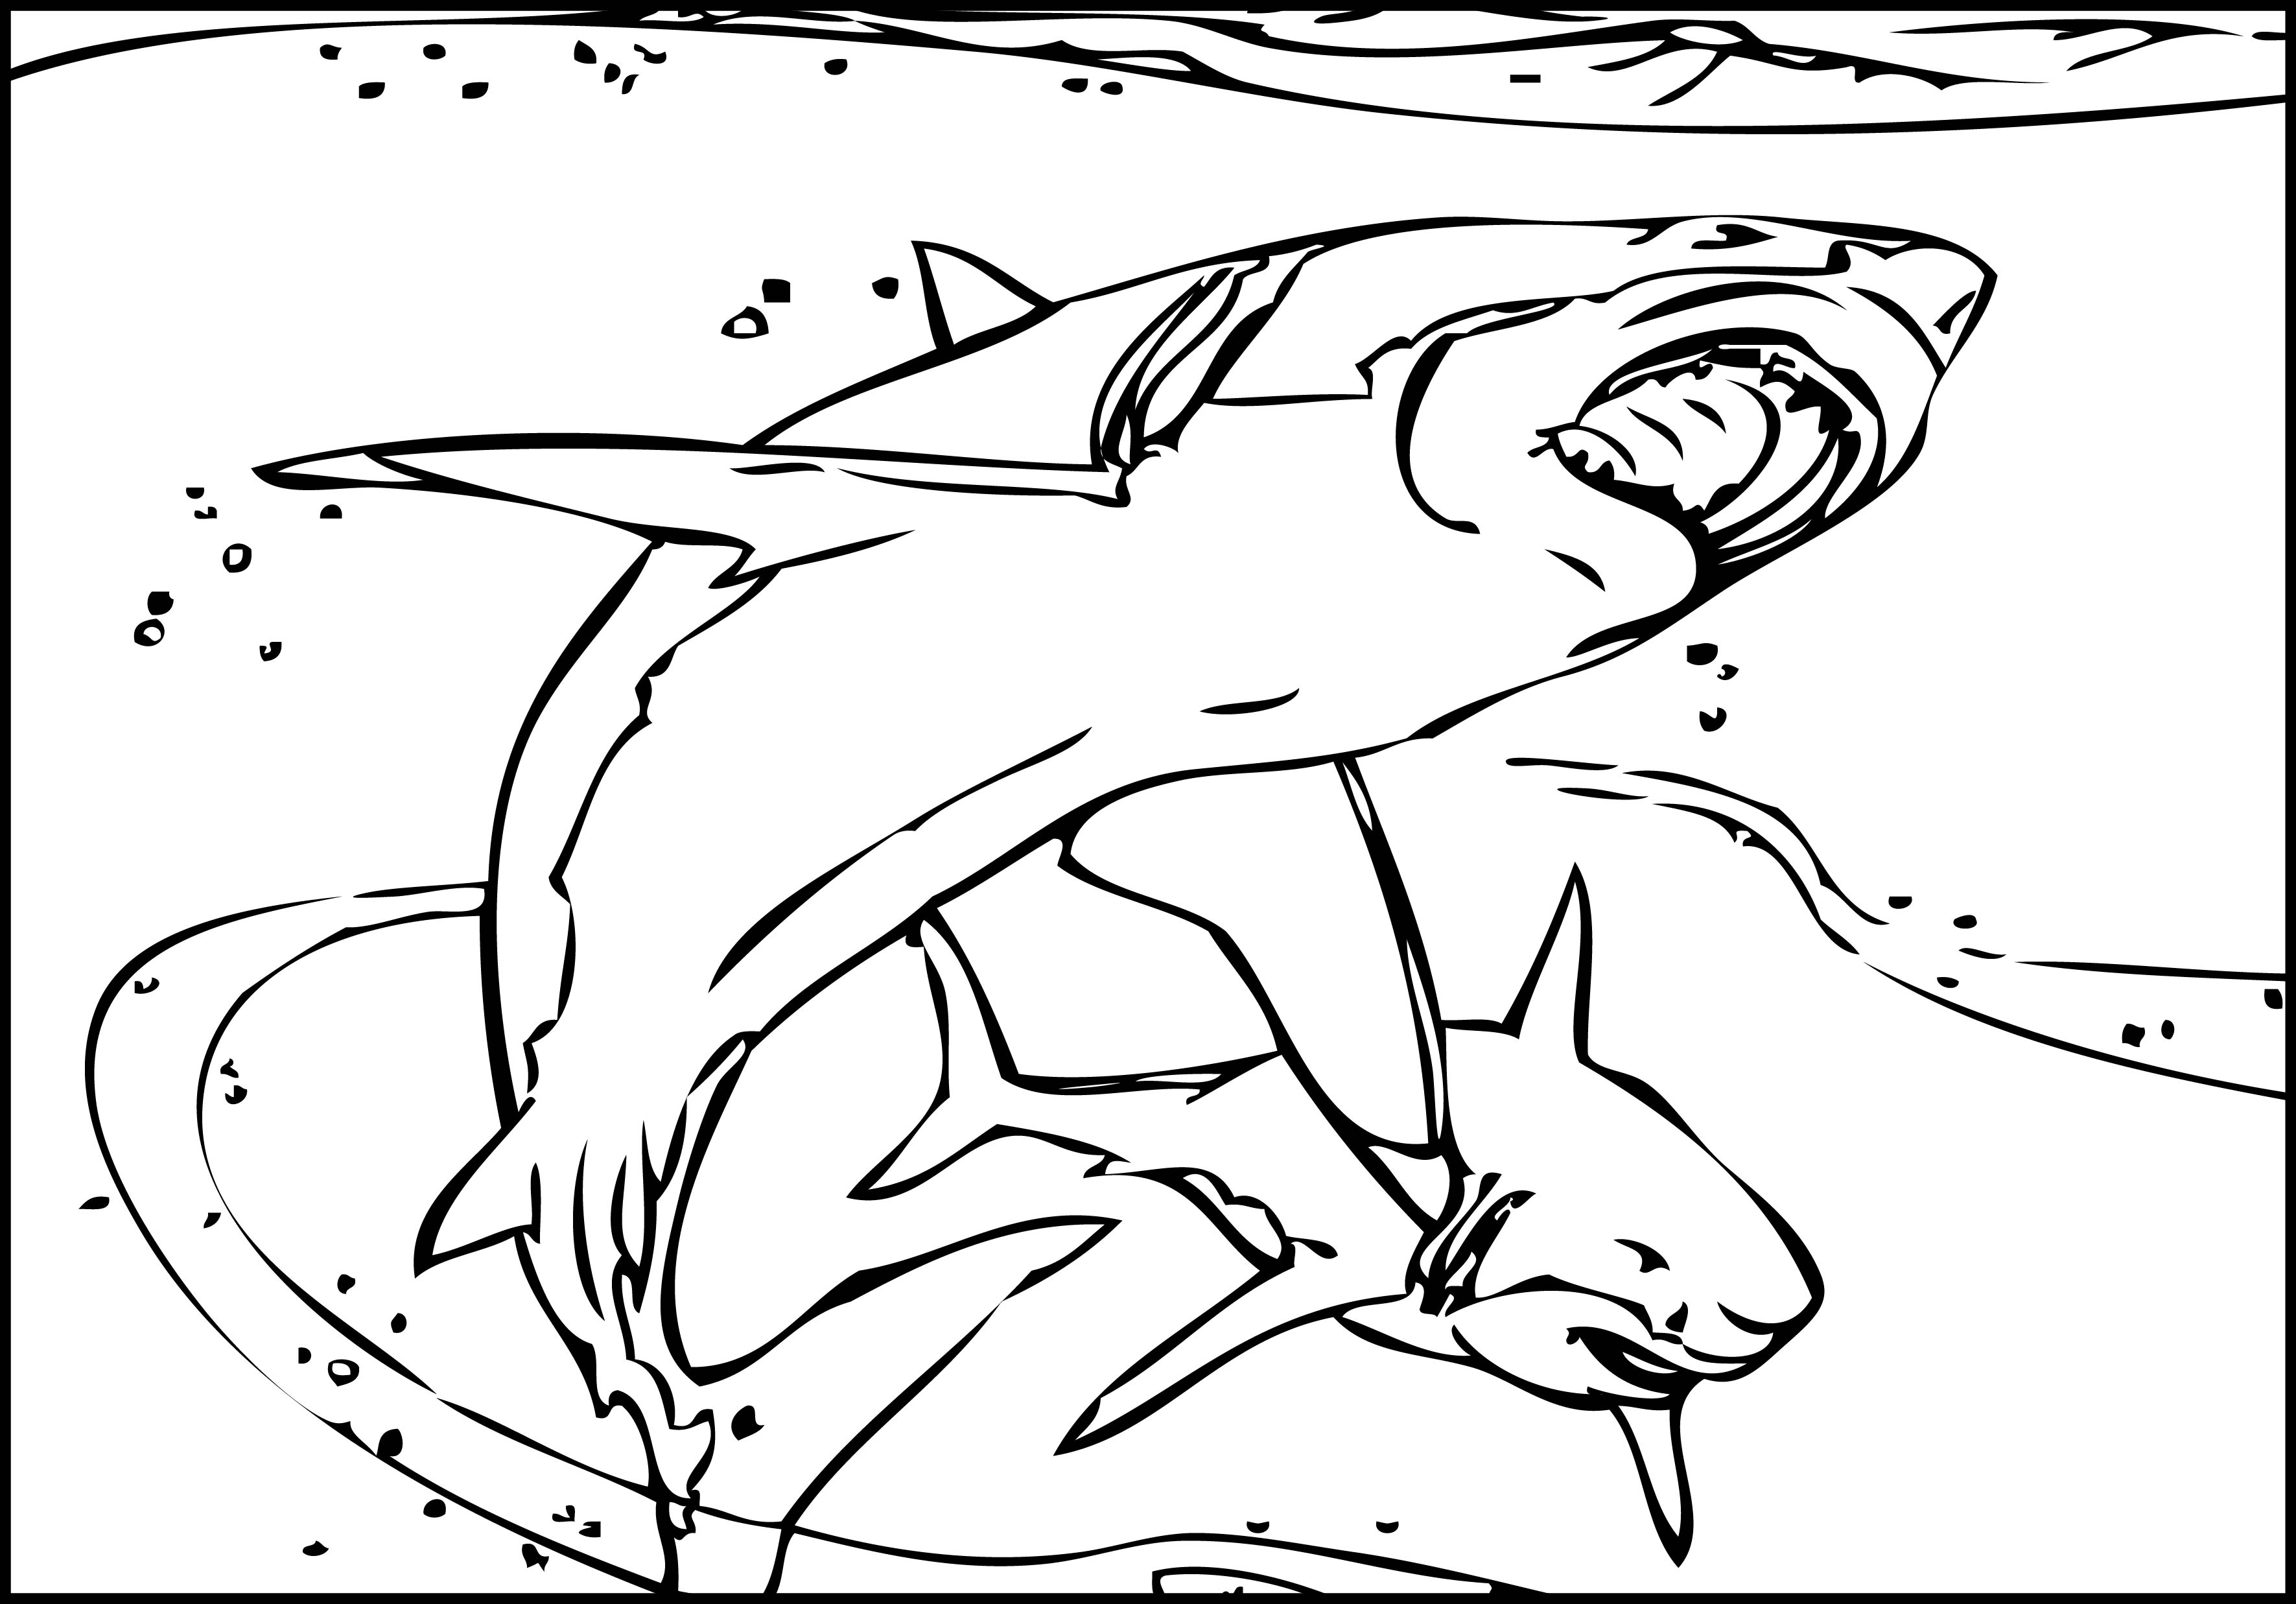 Carpenter Shark coloring #1, Download drawings